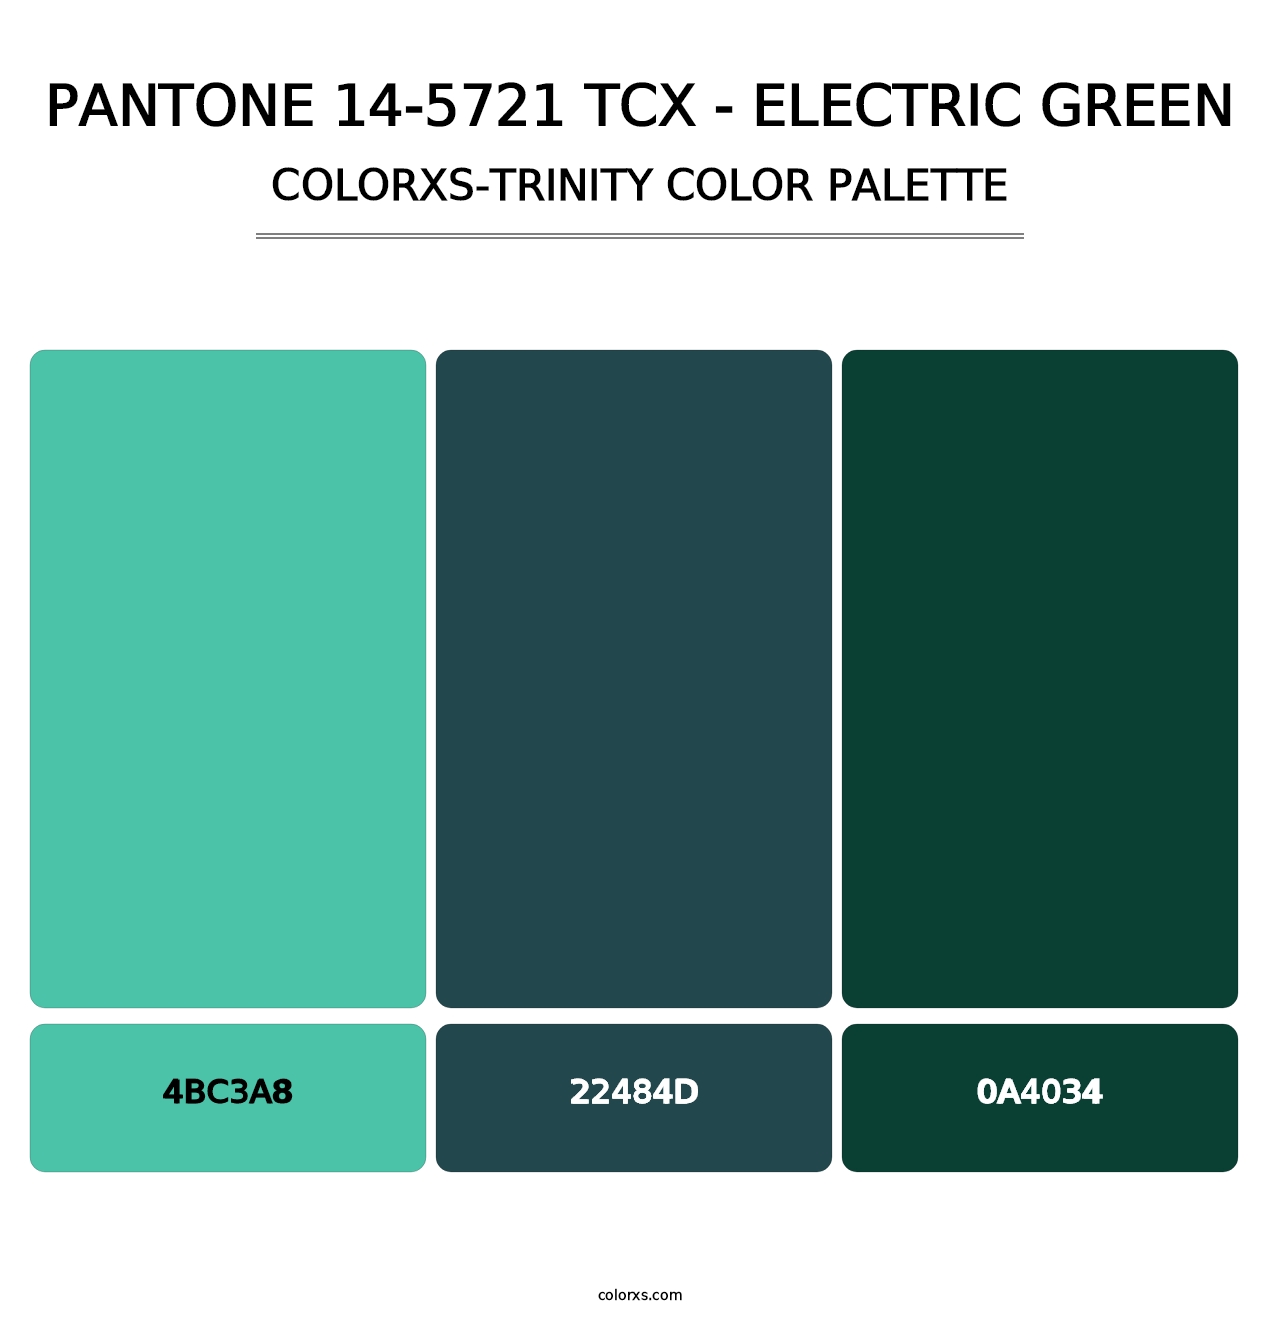 PANTONE 14-5721 TCX - Electric Green - Colorxs Trinity Palette